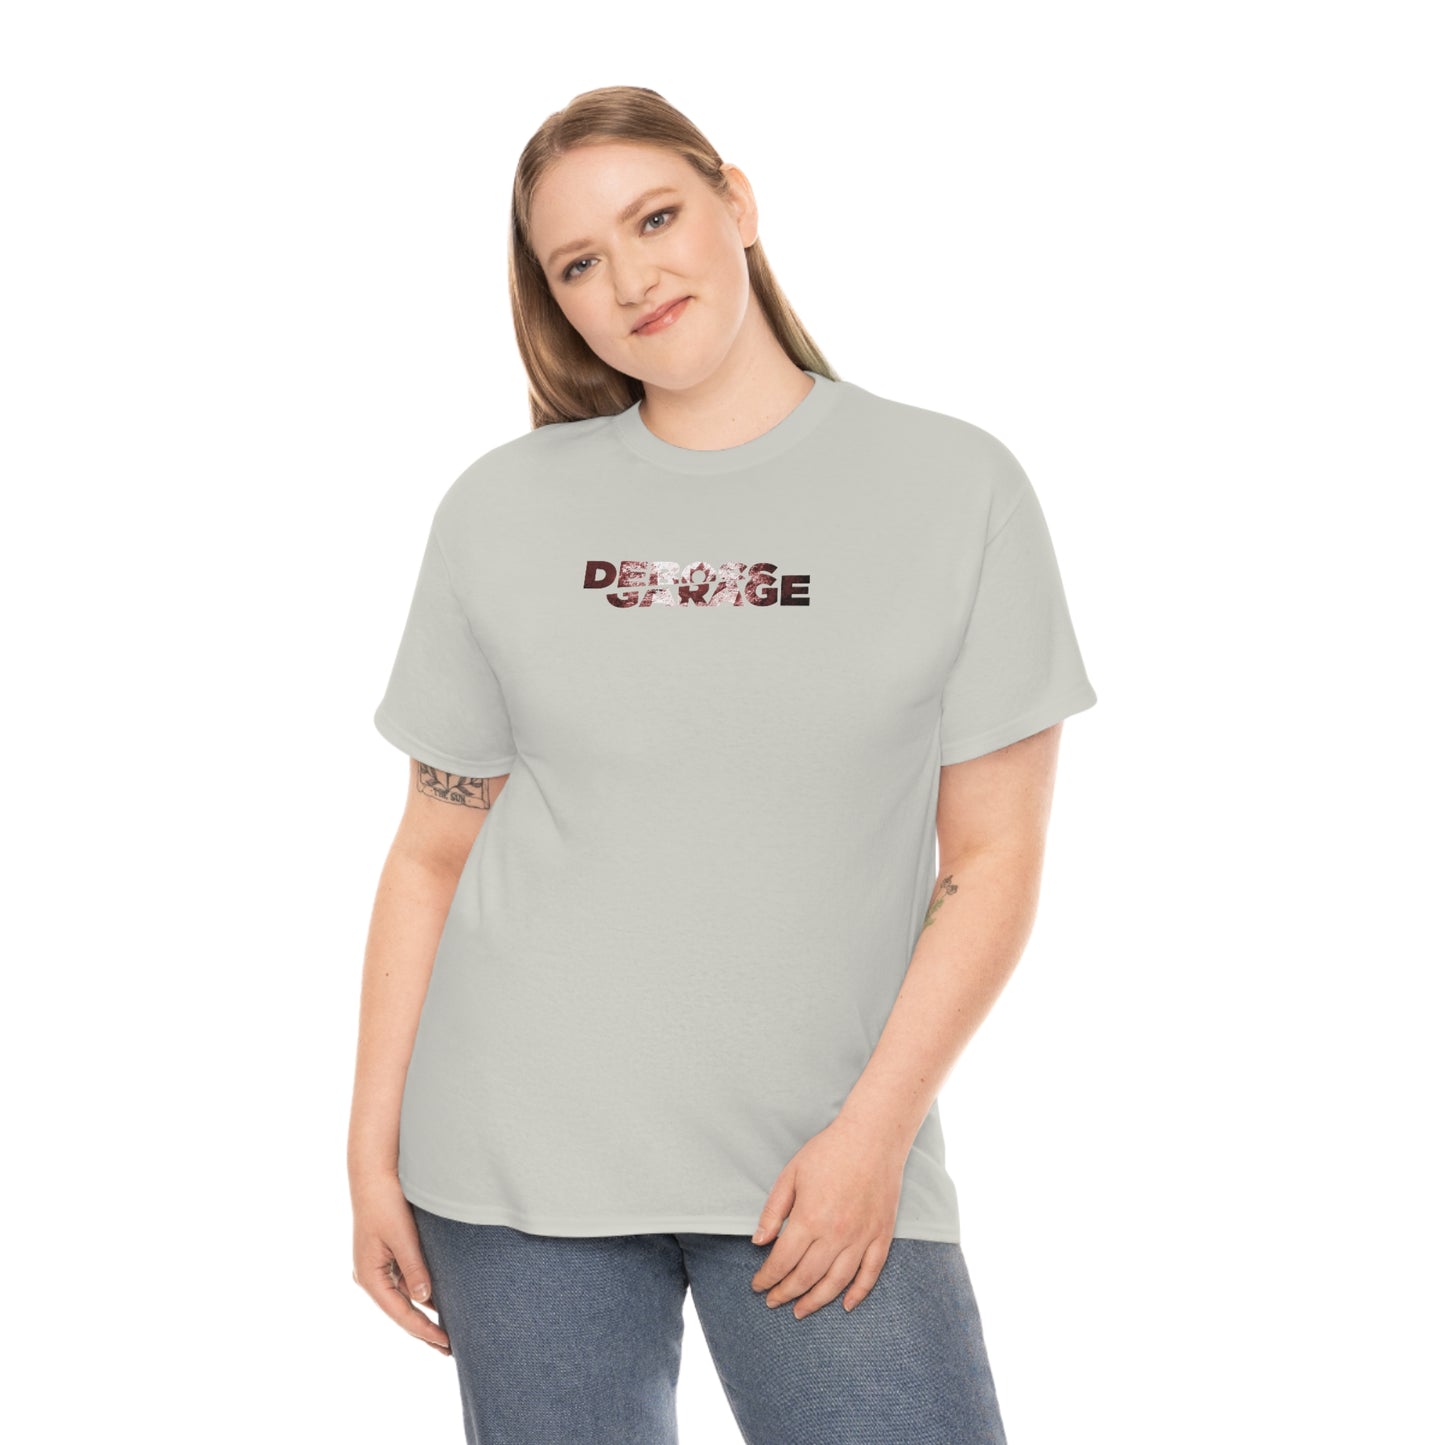 Deboss 🇨🇦 T-Shirt (3XL+)